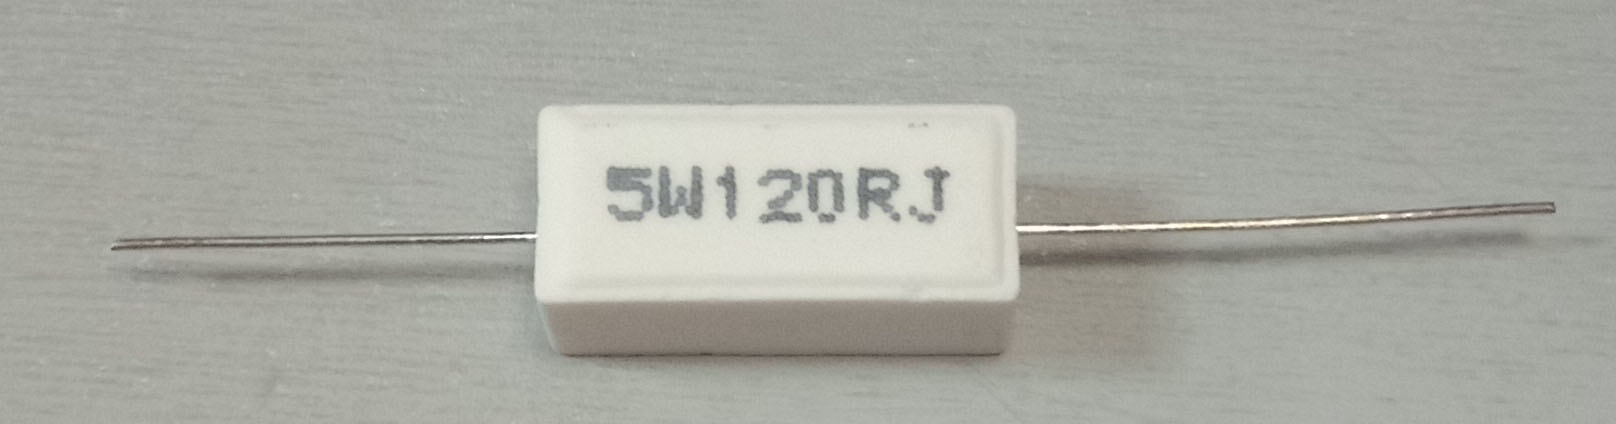 Резистор 5 ом 5 вольт. 5w10j резистор керамический. Керамический резистор 5w 5r6j. Резистор sqp 5w. Резистор 10 ом 10w 5% sqp-резистор.